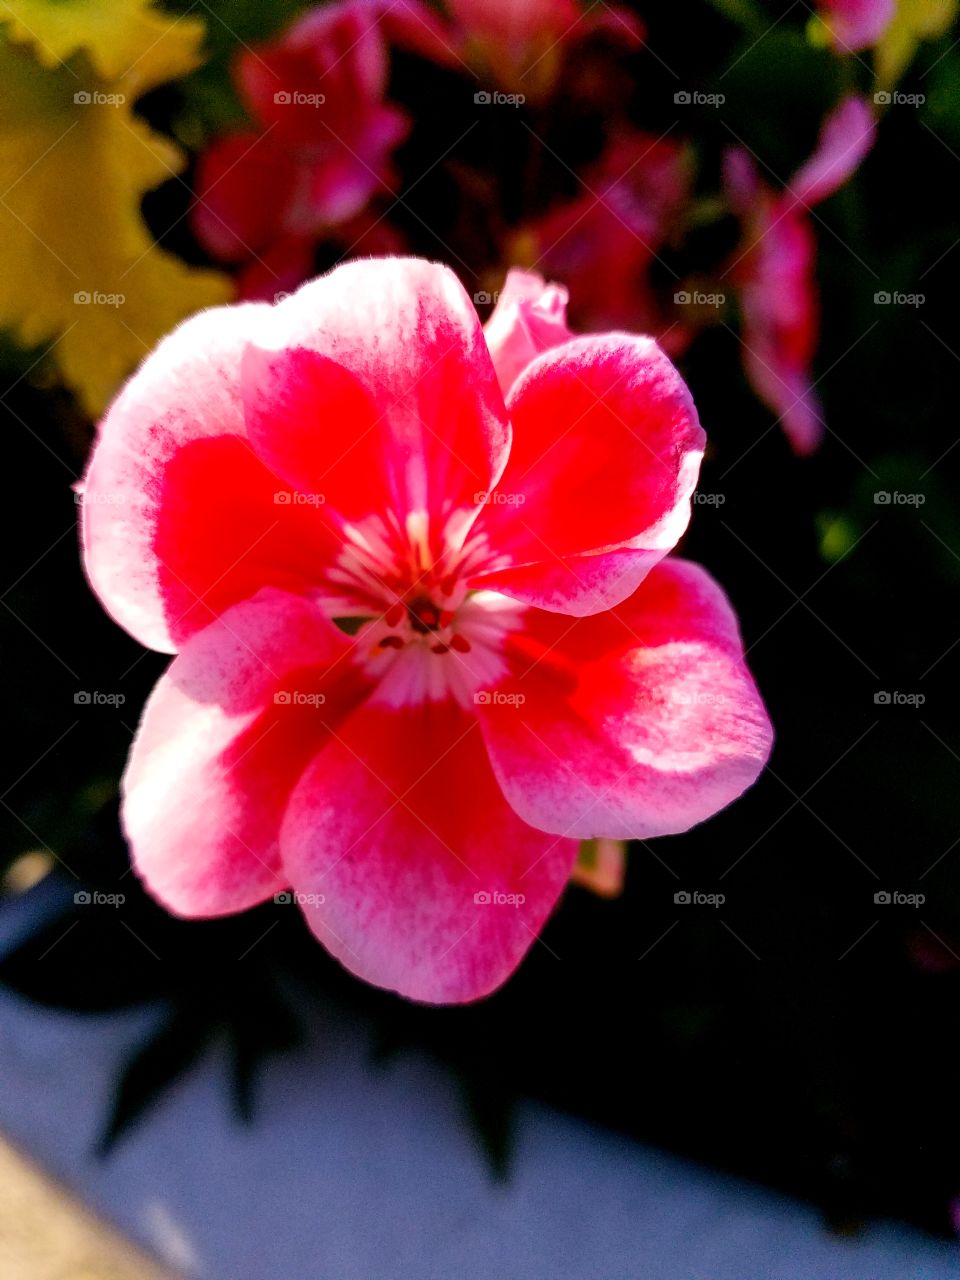 fuscia floral